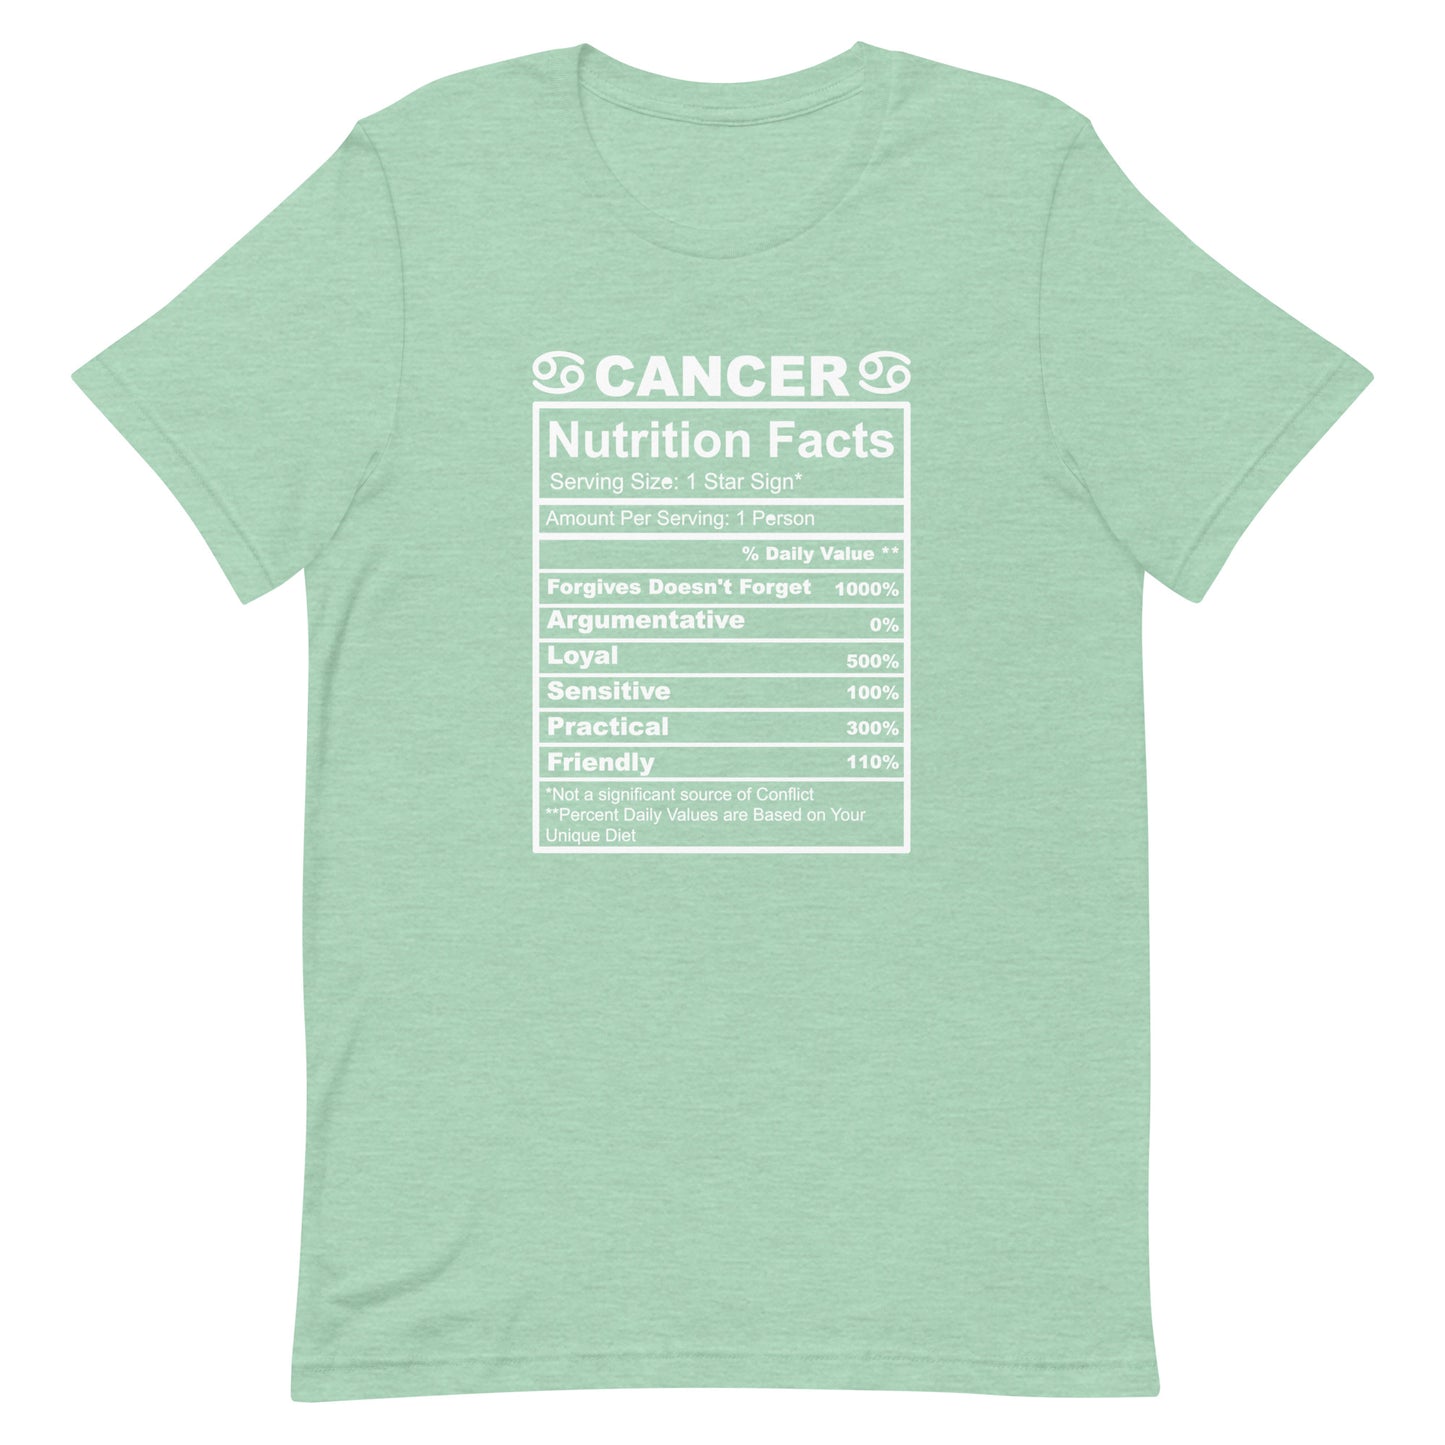 CANCER - L-XL - Unisex T-Shirt (white letters)